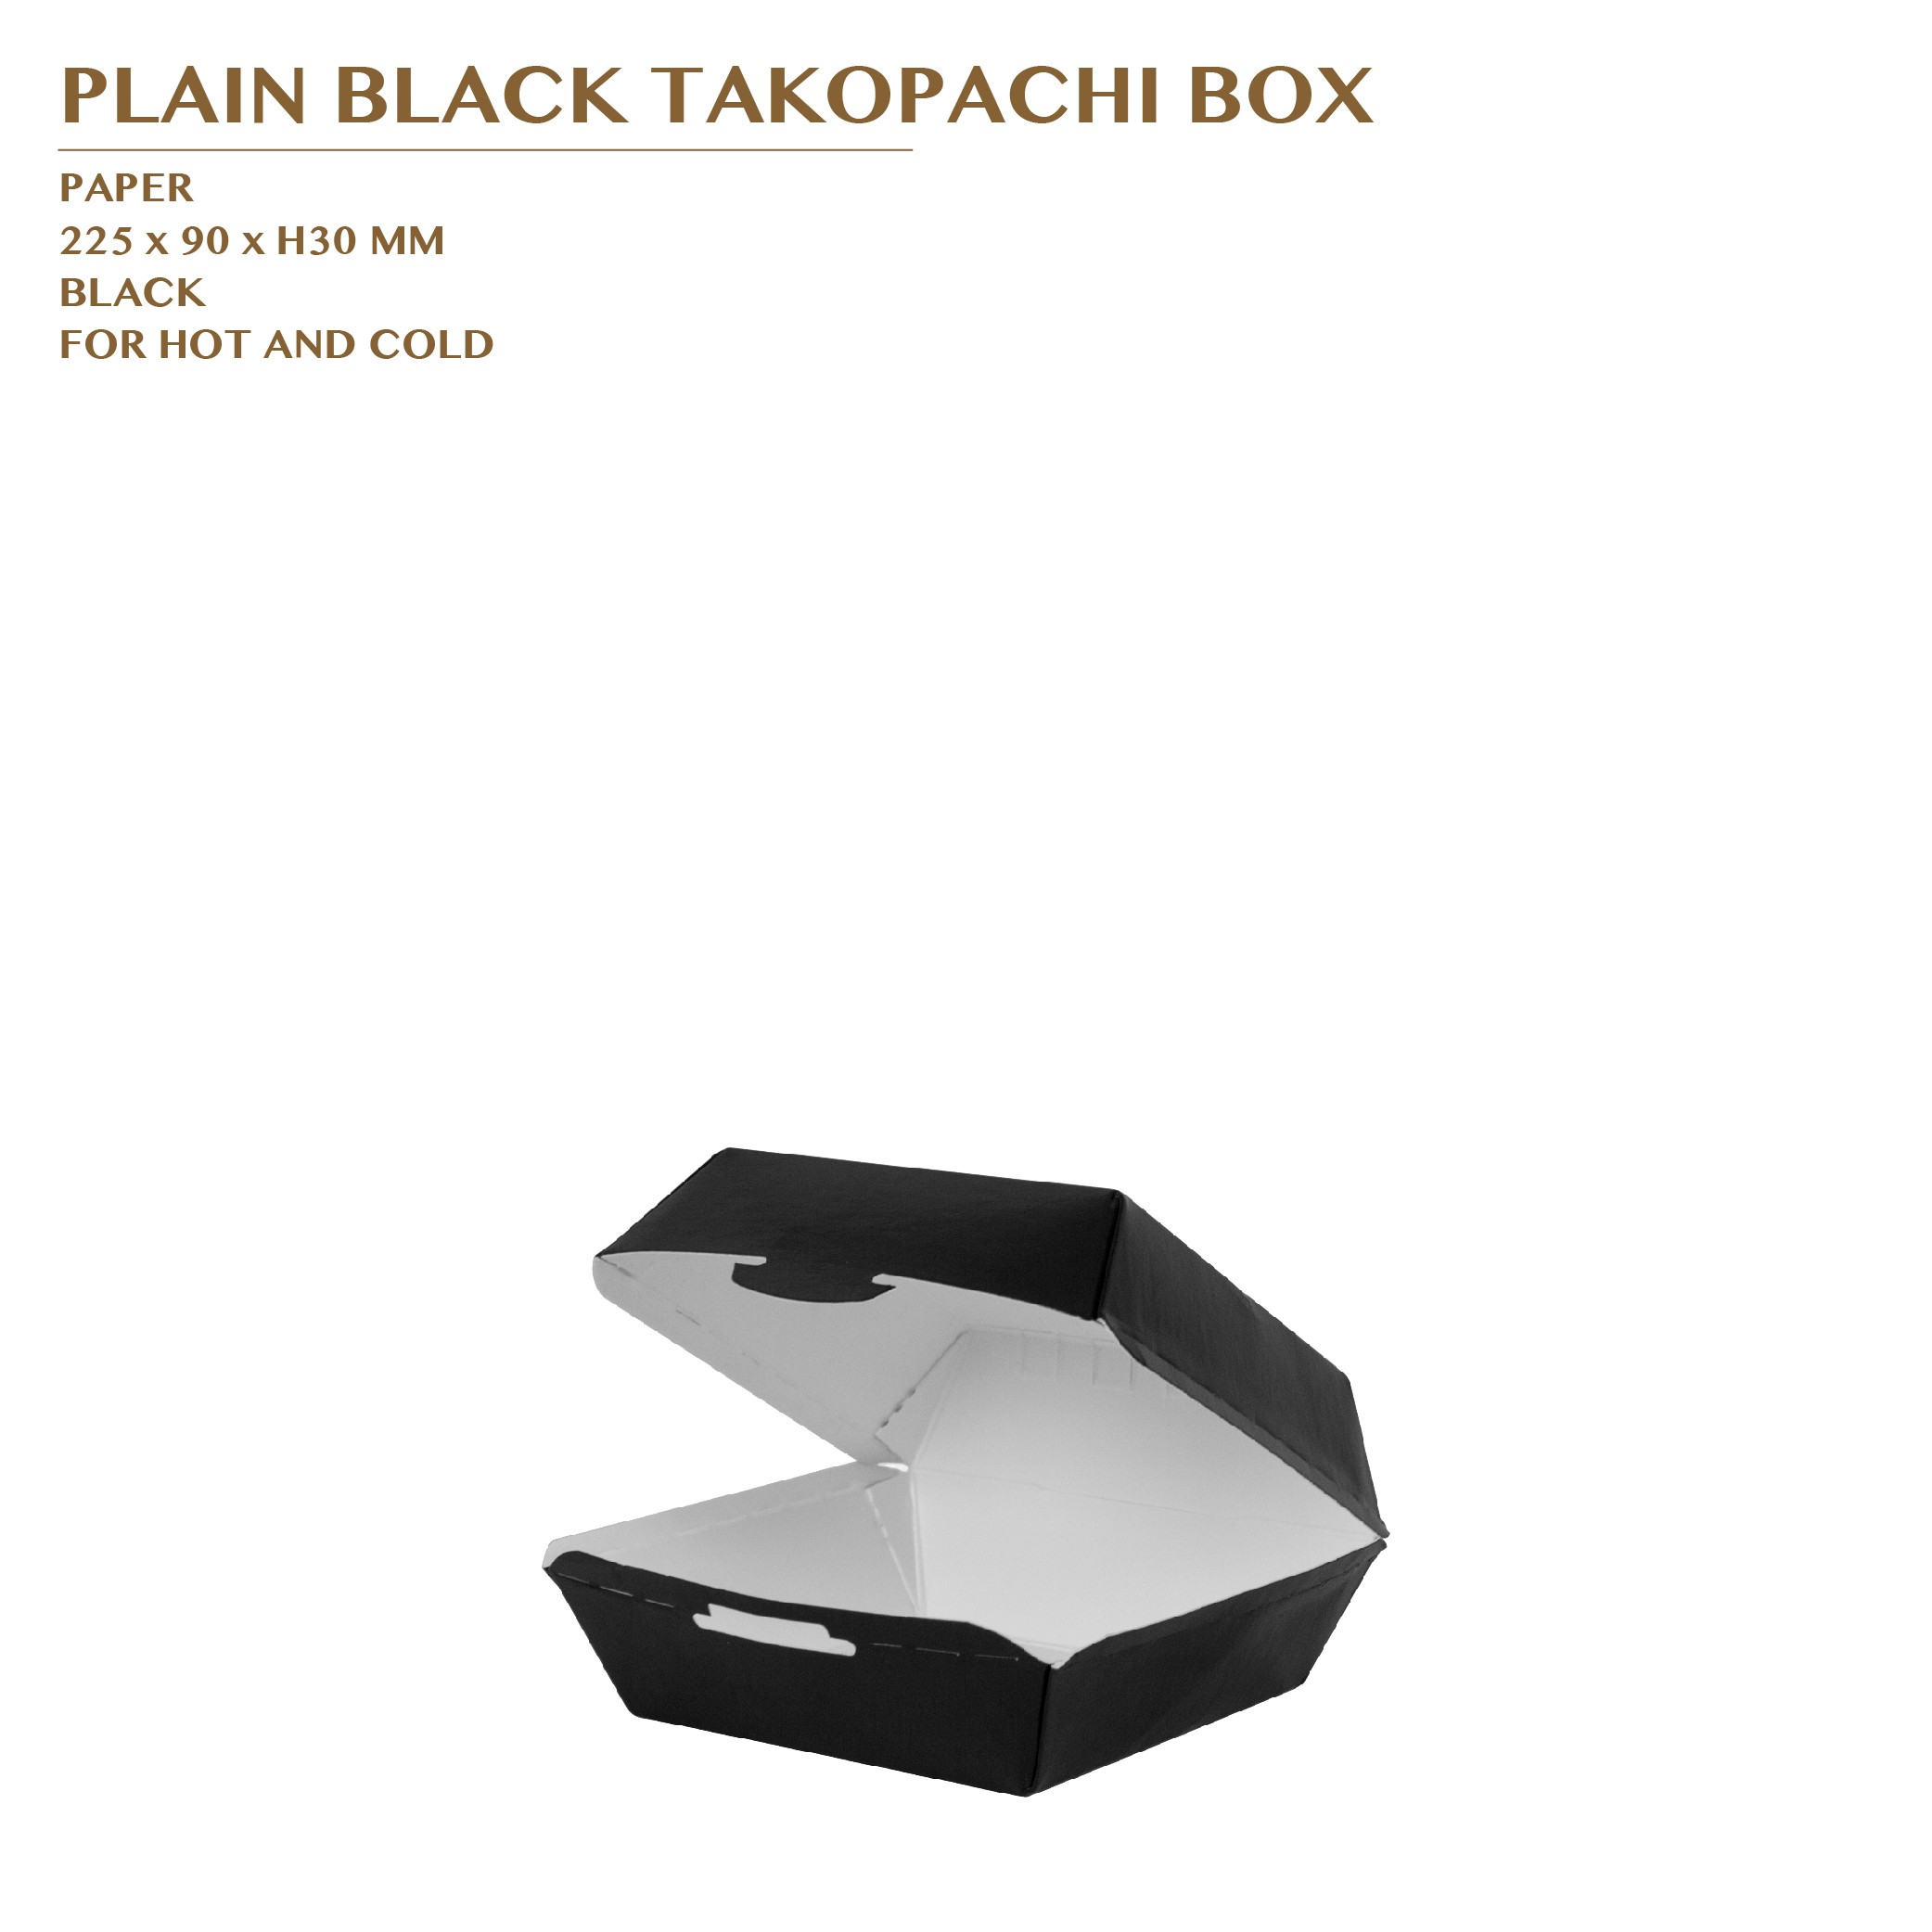 PRE-ORDER PLAIN BLACK TAKOPACHI BOX 1000PCS/CTN